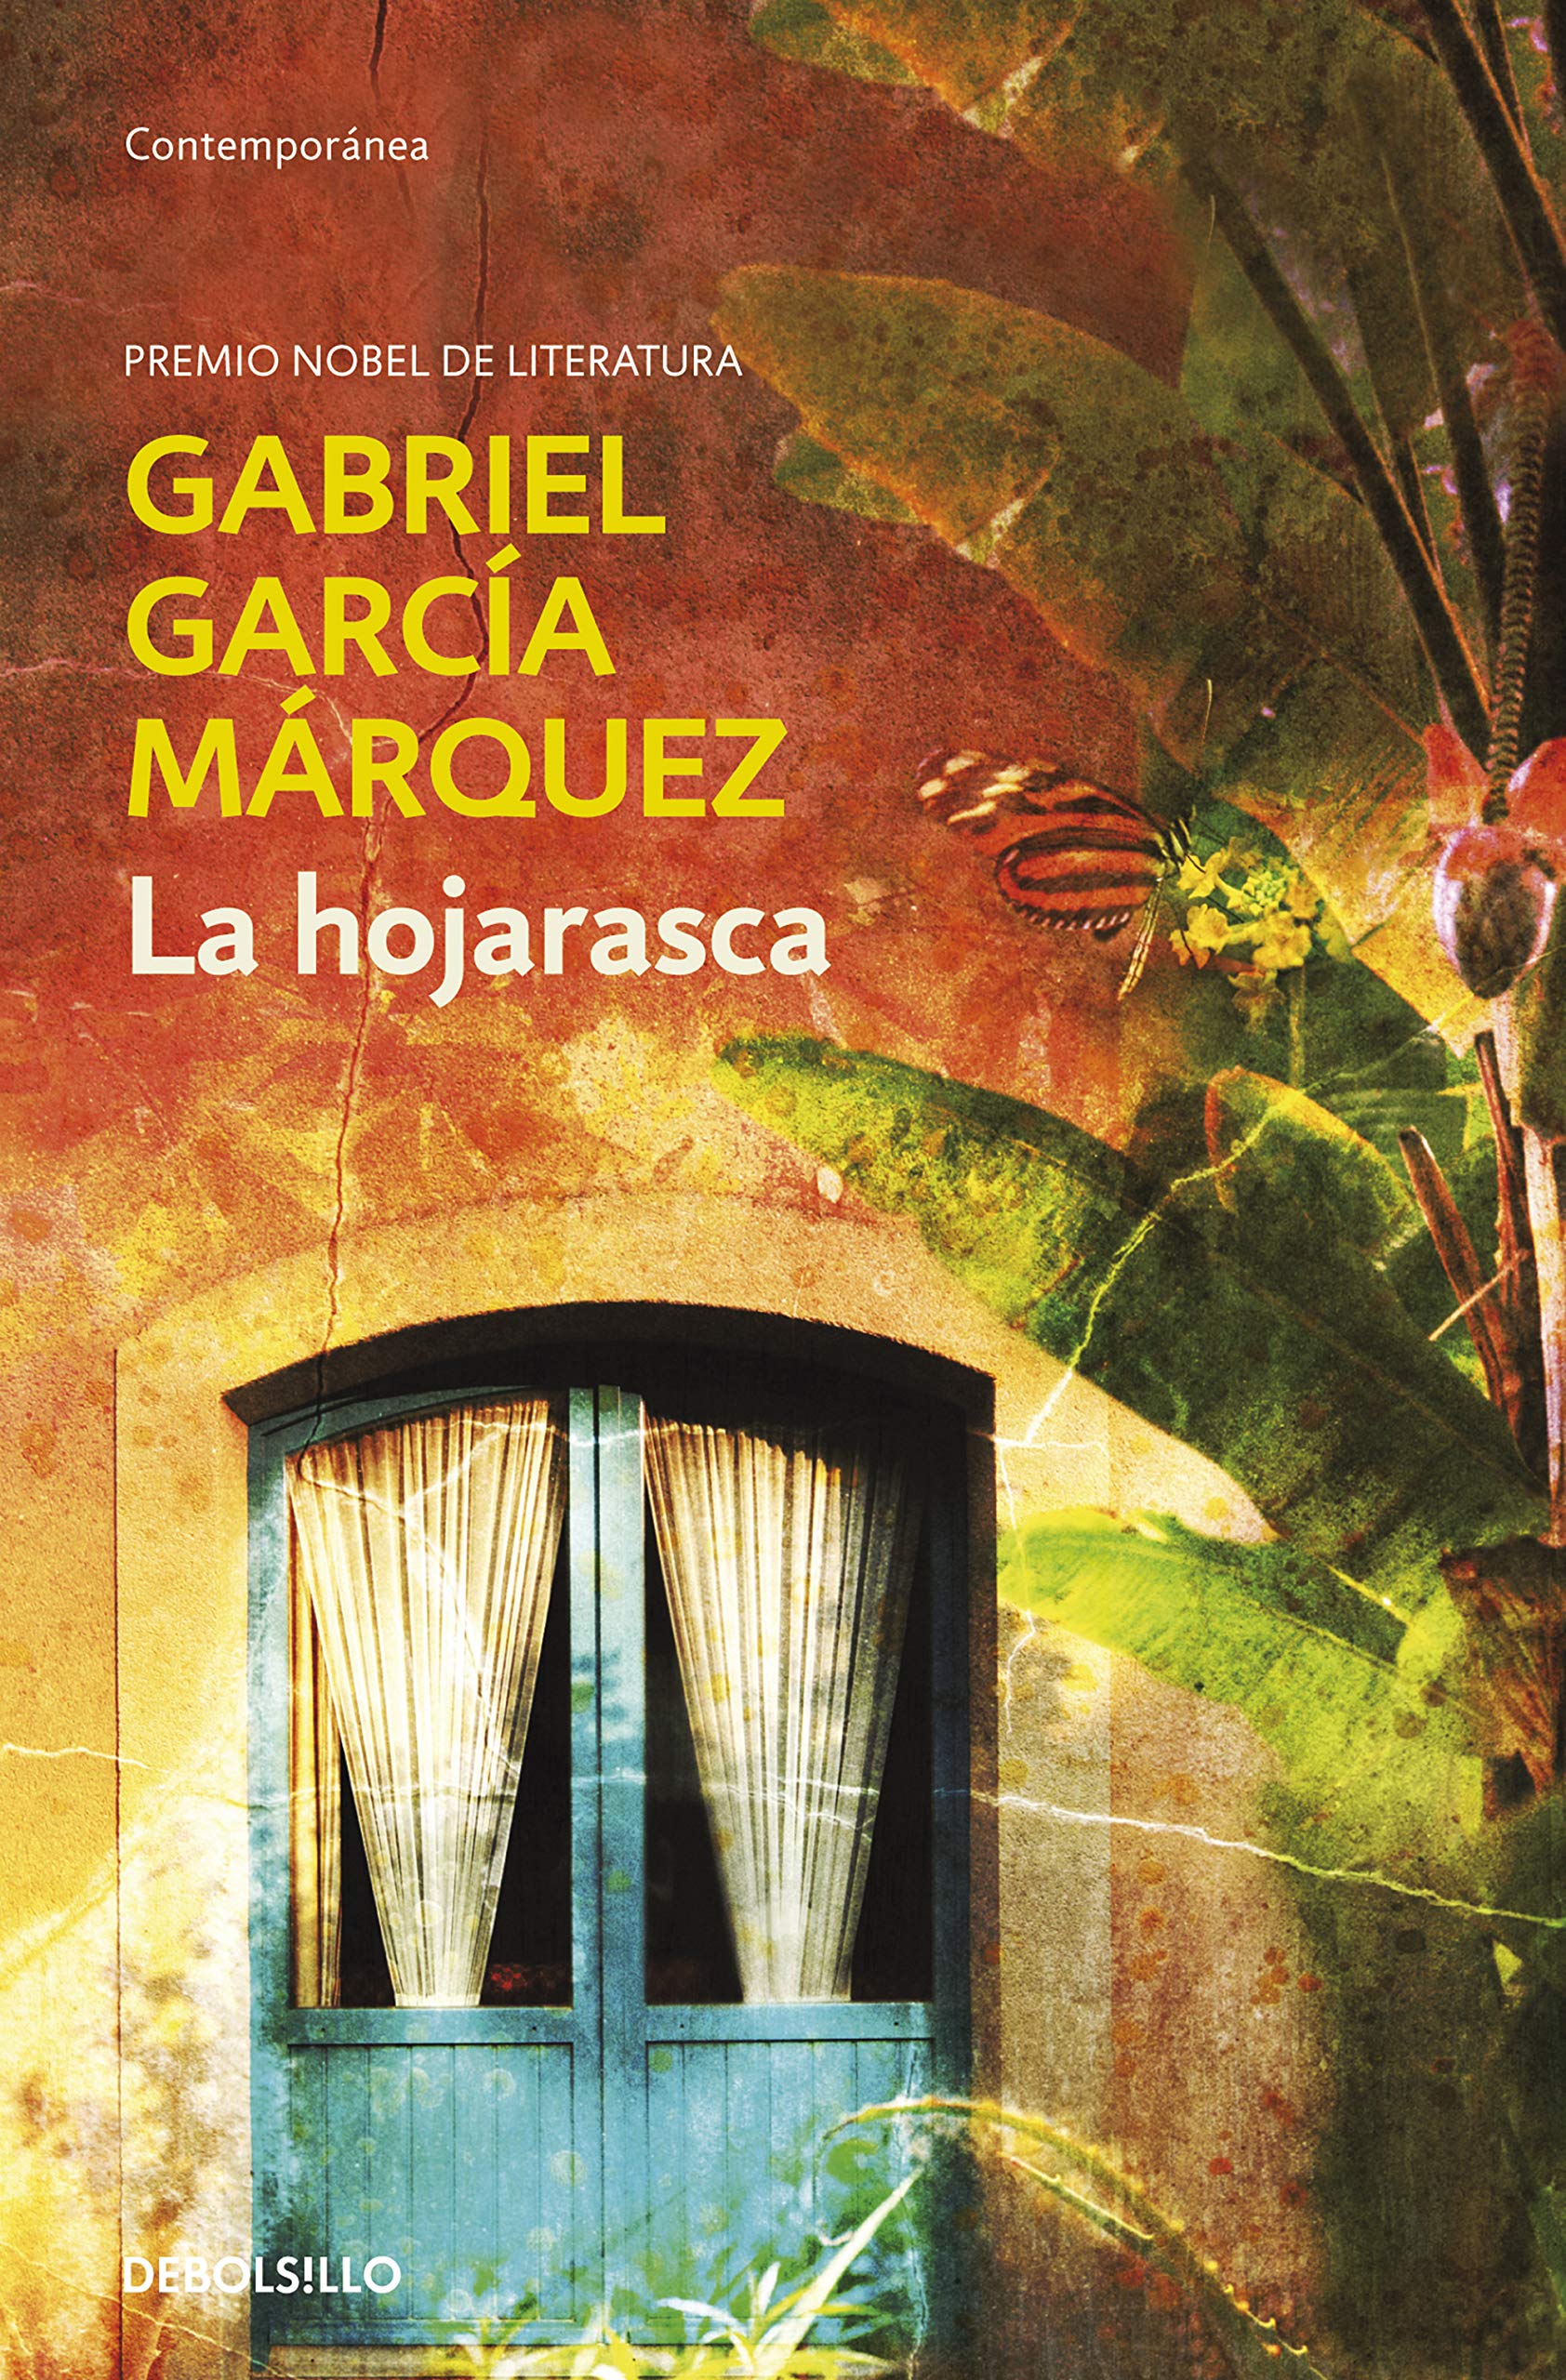 Gabriel Garcia Marquez - La hojarasca